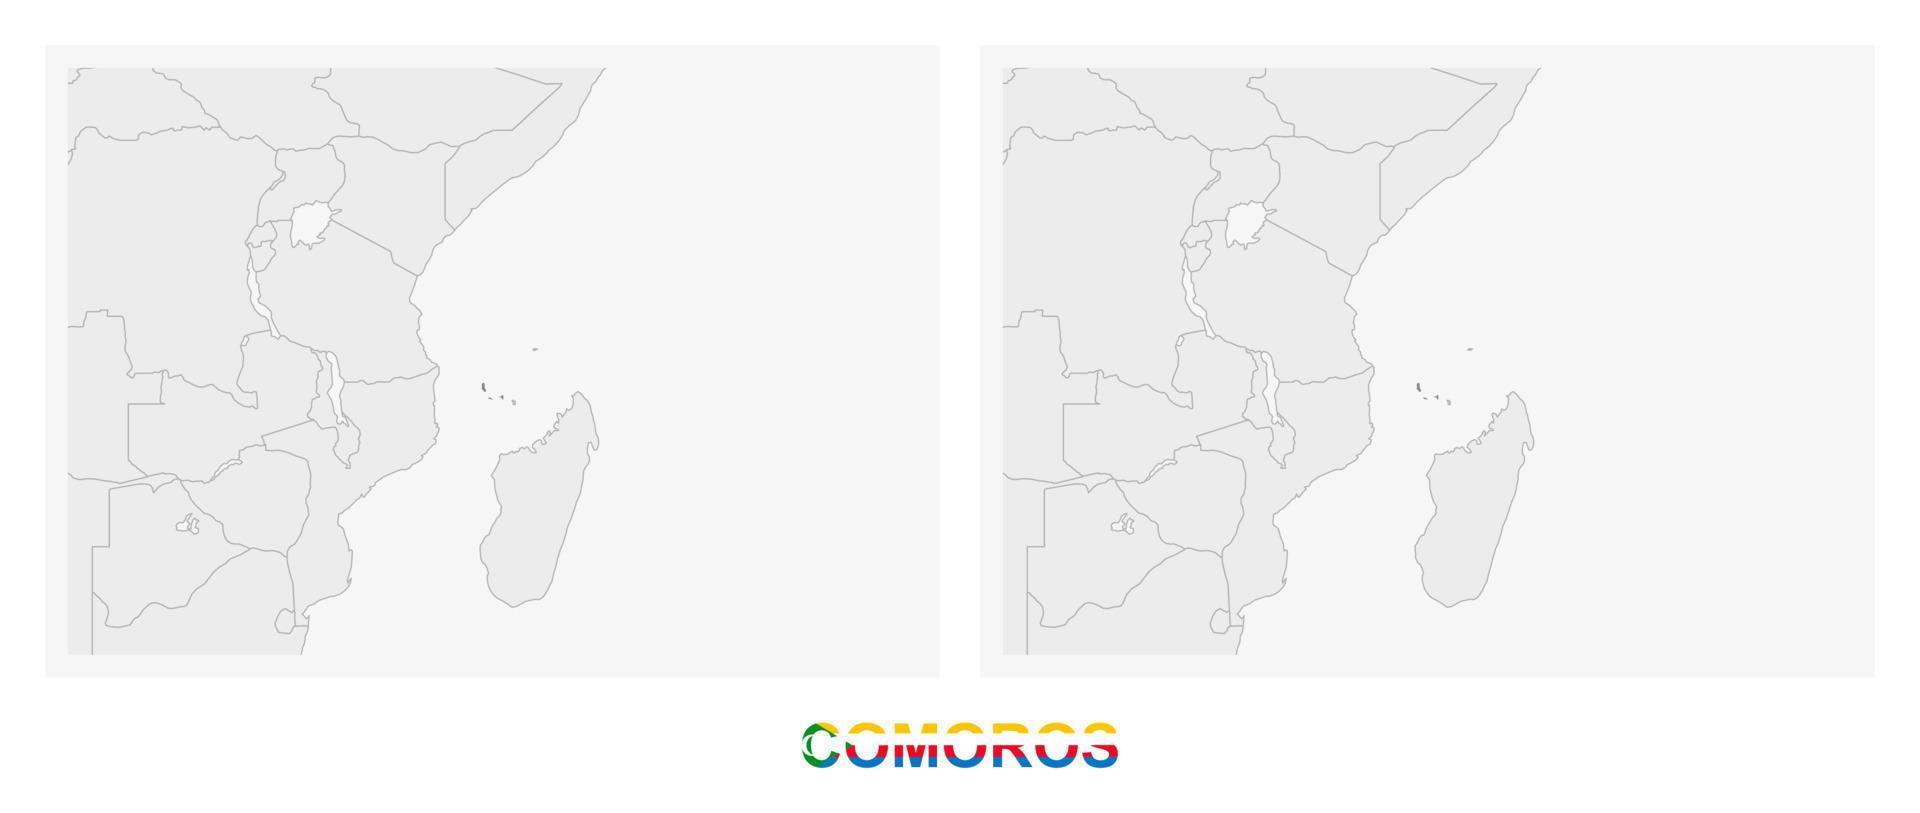 dos versiones del mapa de comoras, con la bandera de comoras y resaltada en gris oscuro. vector